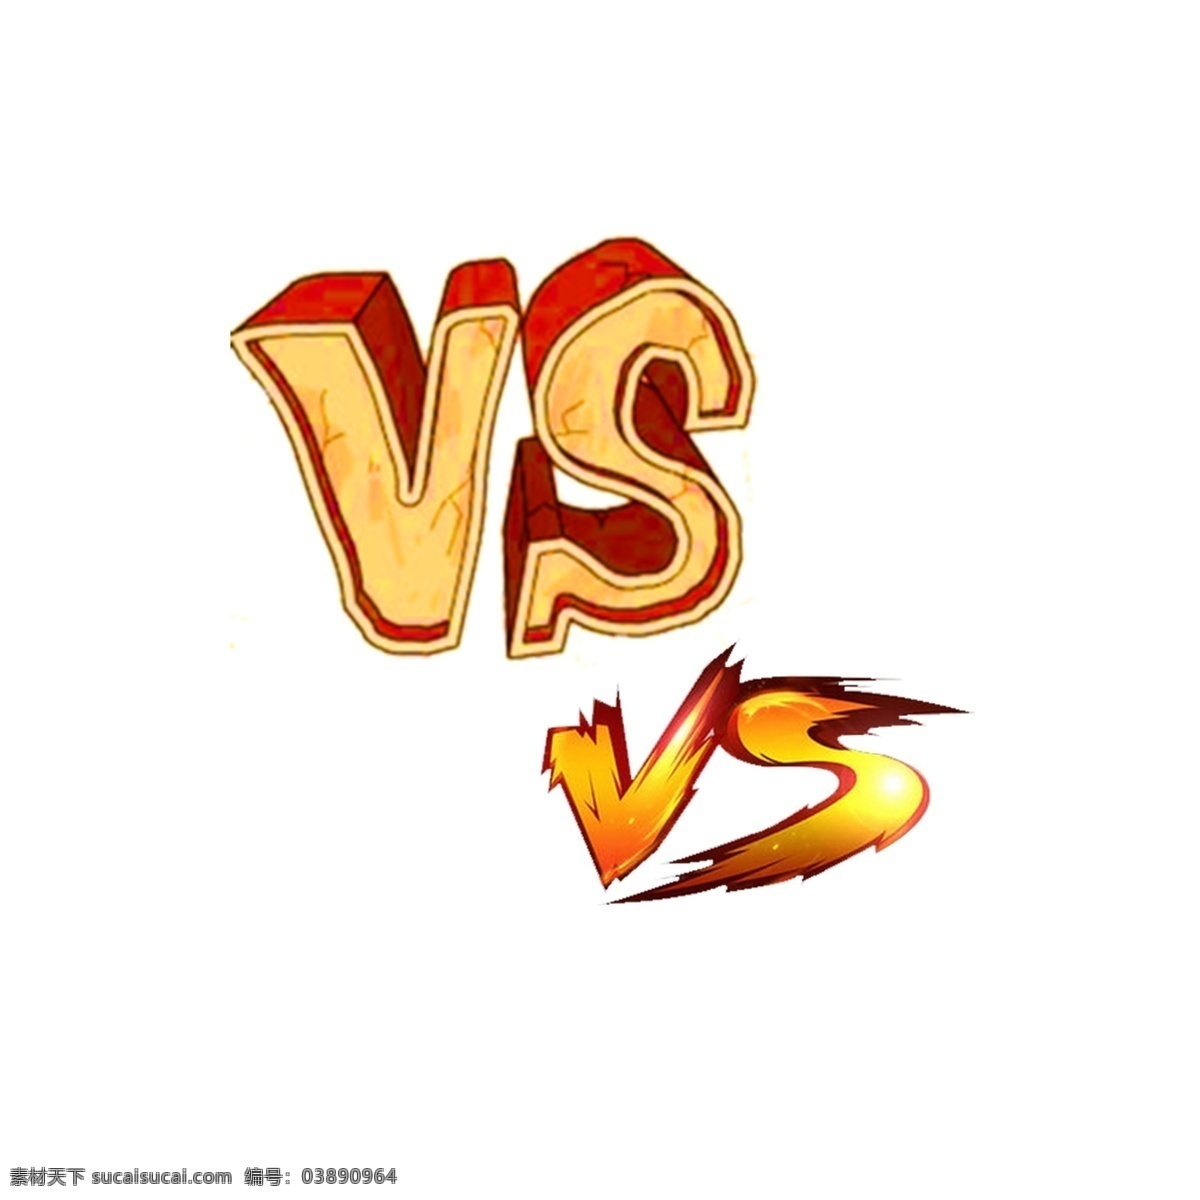 vs字体 书法 毛笔字 传统 黑色 红色 蓝色 渐变 艺术字 vs 对决 决斗 游戏 字体设计 设计素材